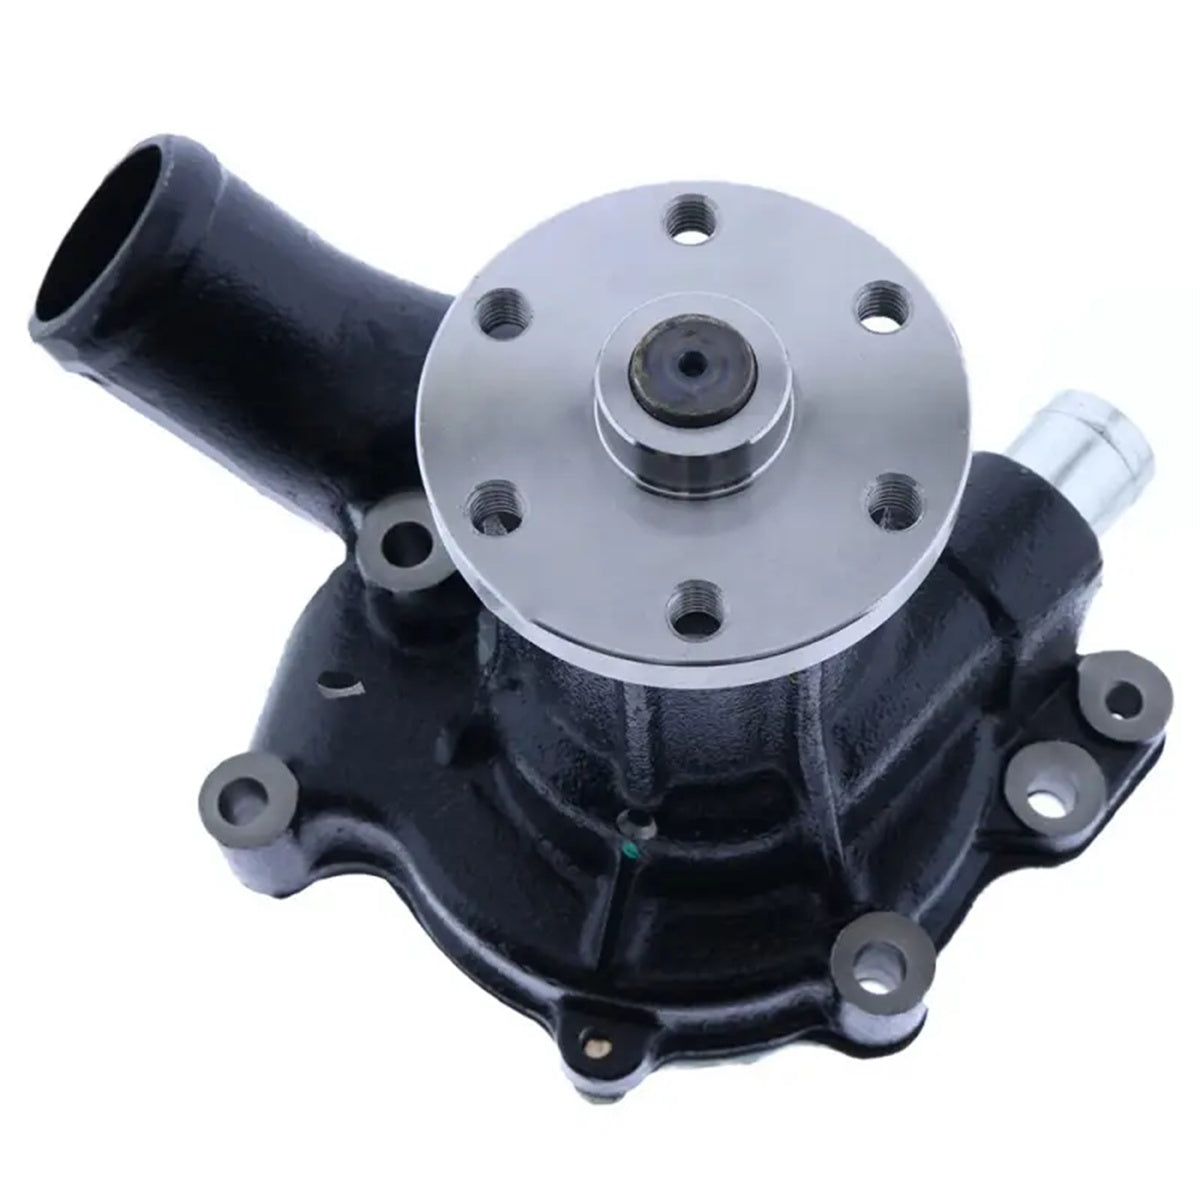 1-13610190-0 Water Pump for Hitachi EX200-2 Excavator Isuzu 6BD1 Diesel Engine - Sinocmp